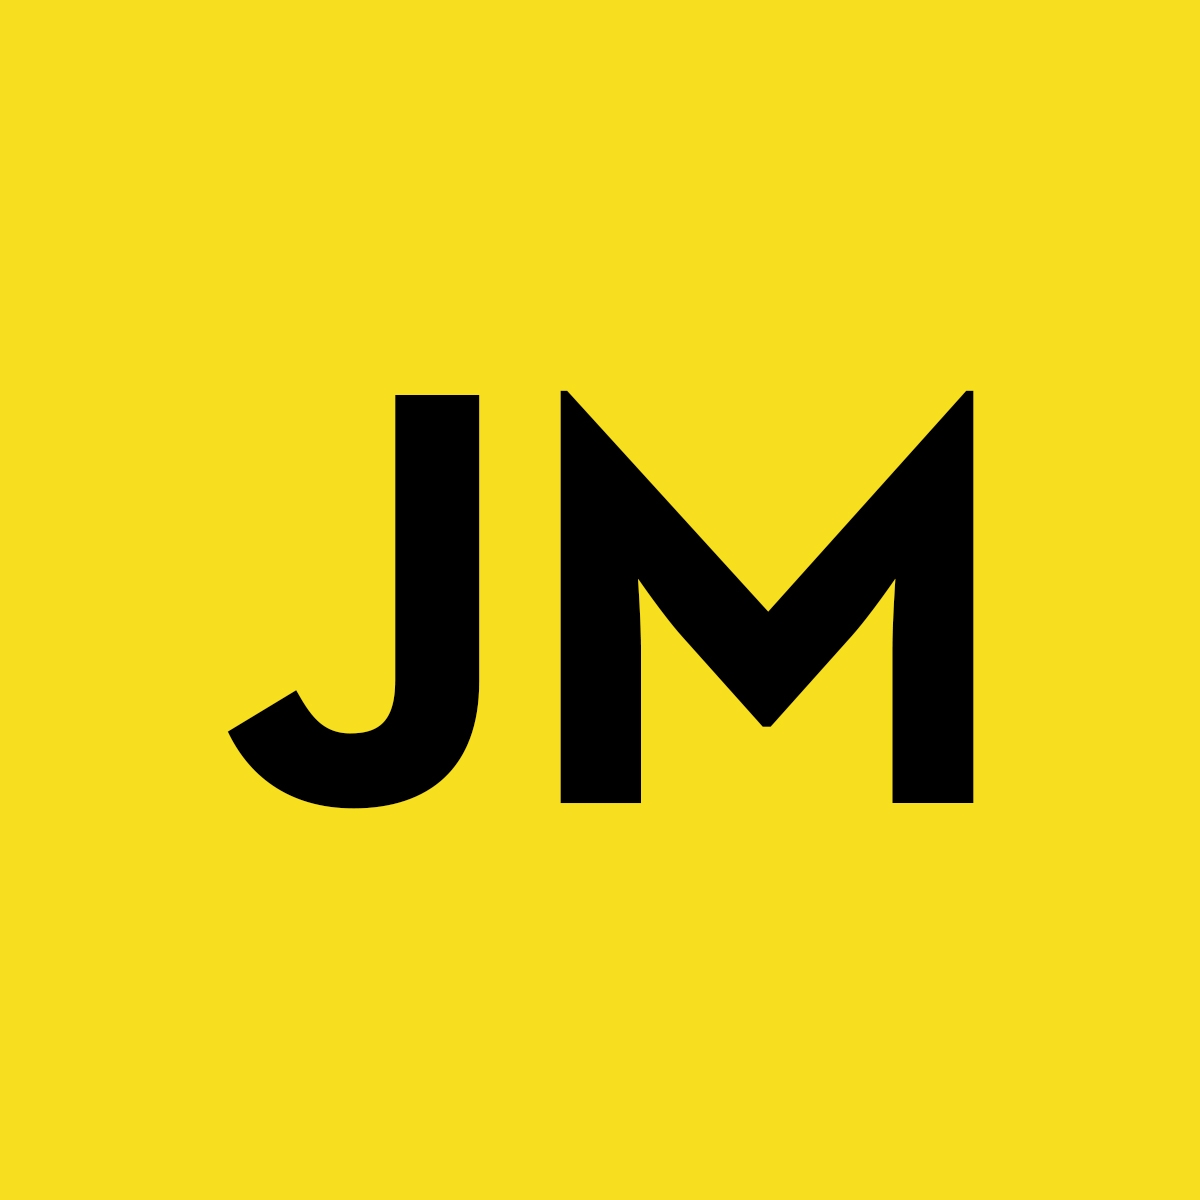 James R. Moro | Desenvolvedor Front-End